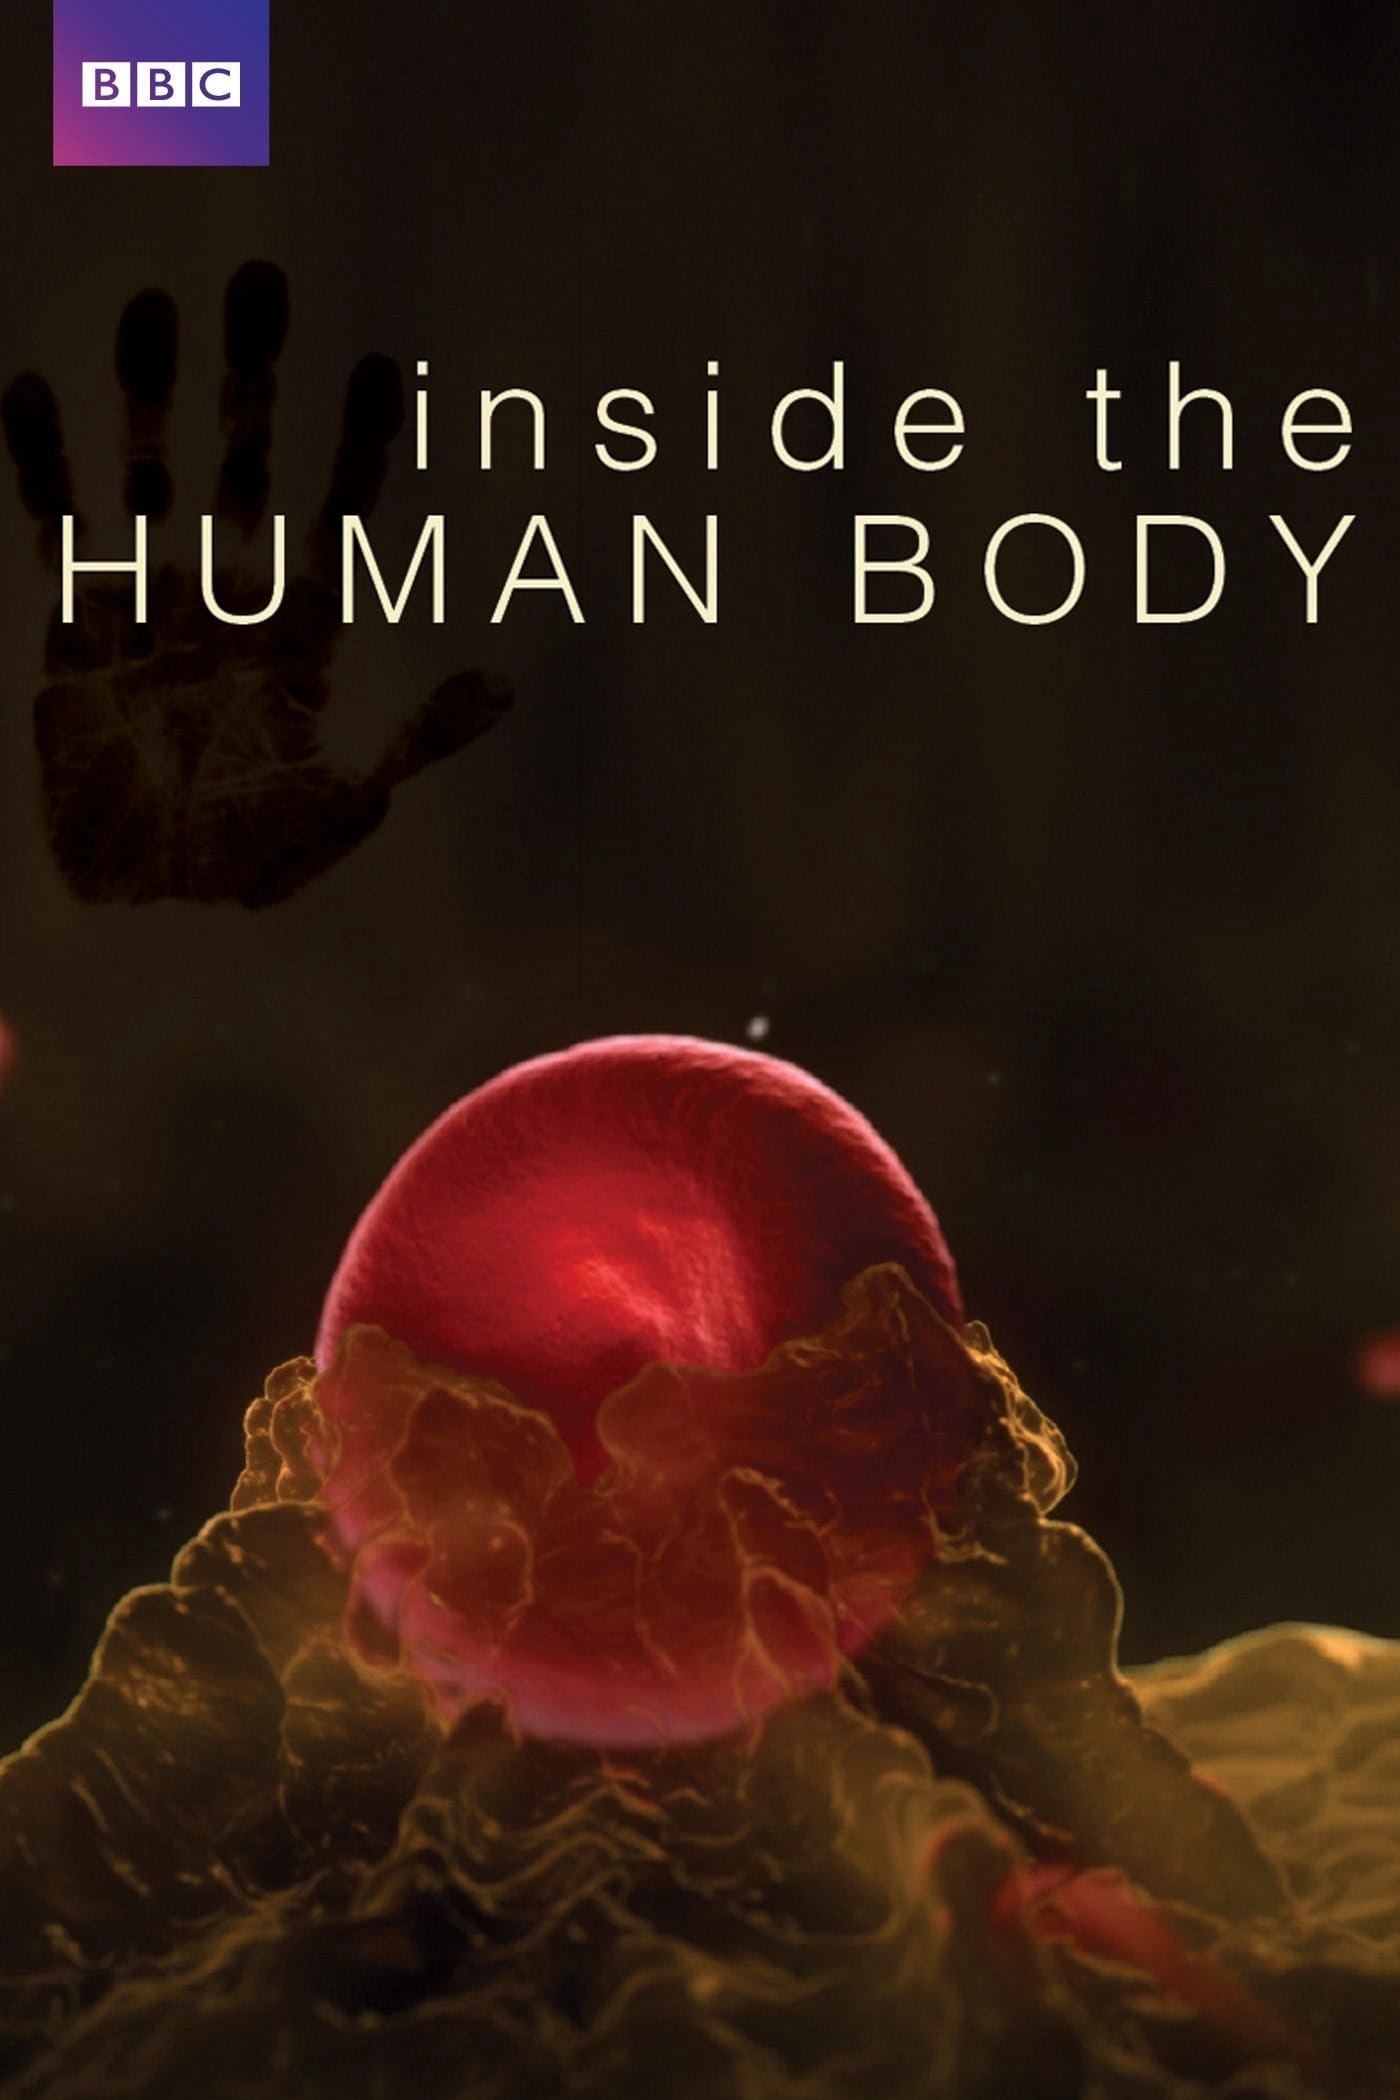 Inside the Human Body - Inside the Human Body (2011)